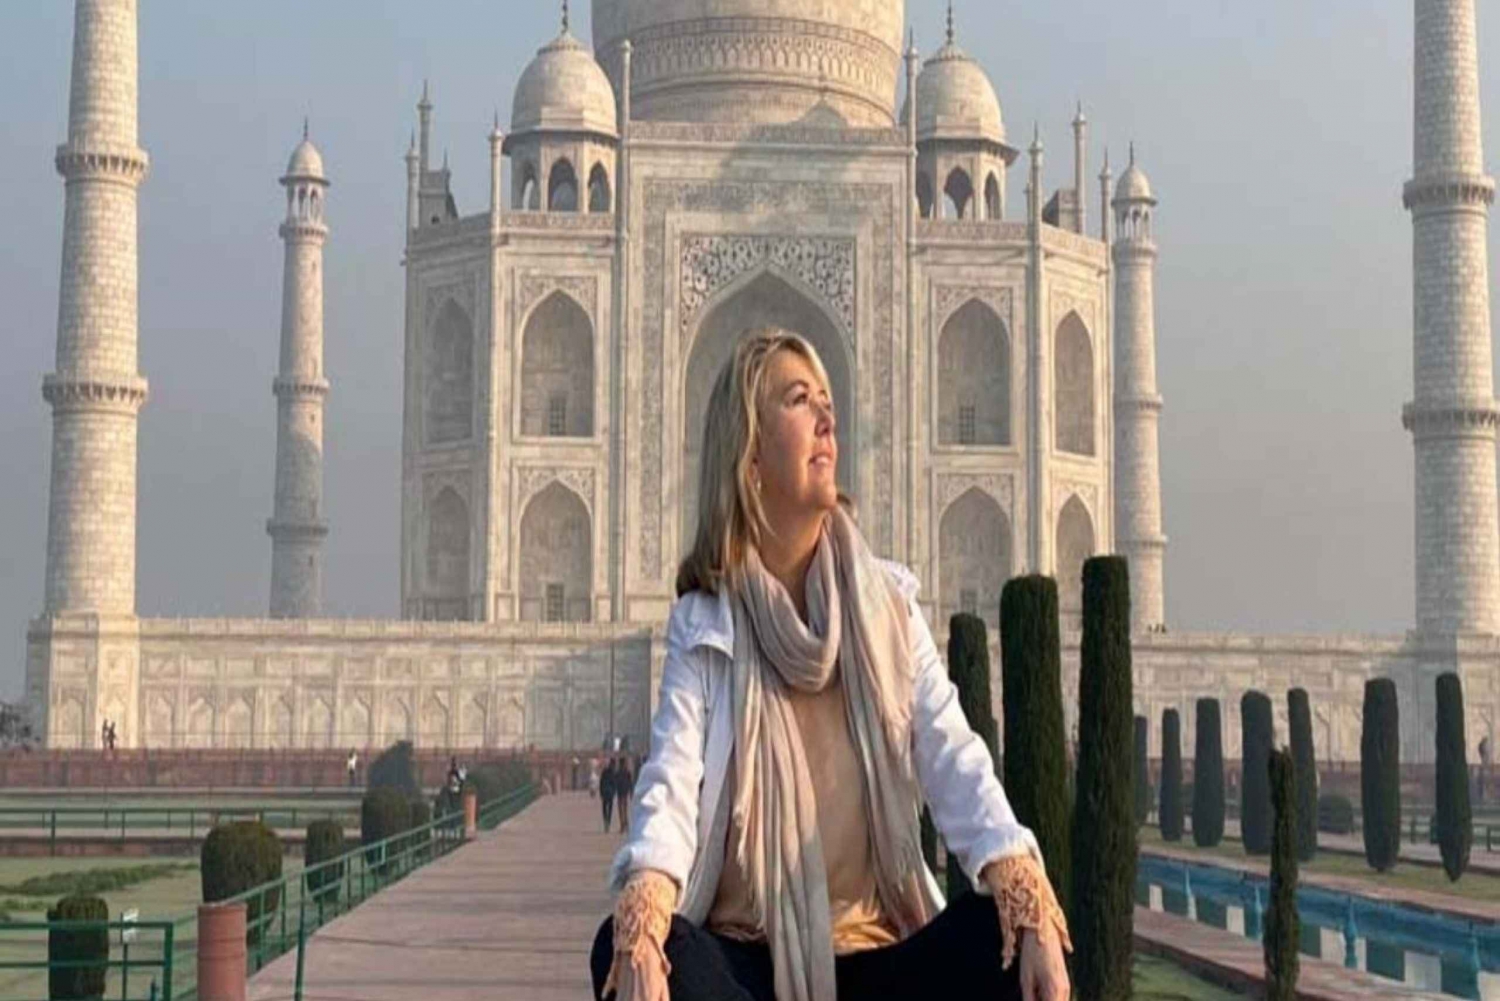 Z Delhi: prywatna wycieczka do Agry z szybkim wejściem do Taj Mahal